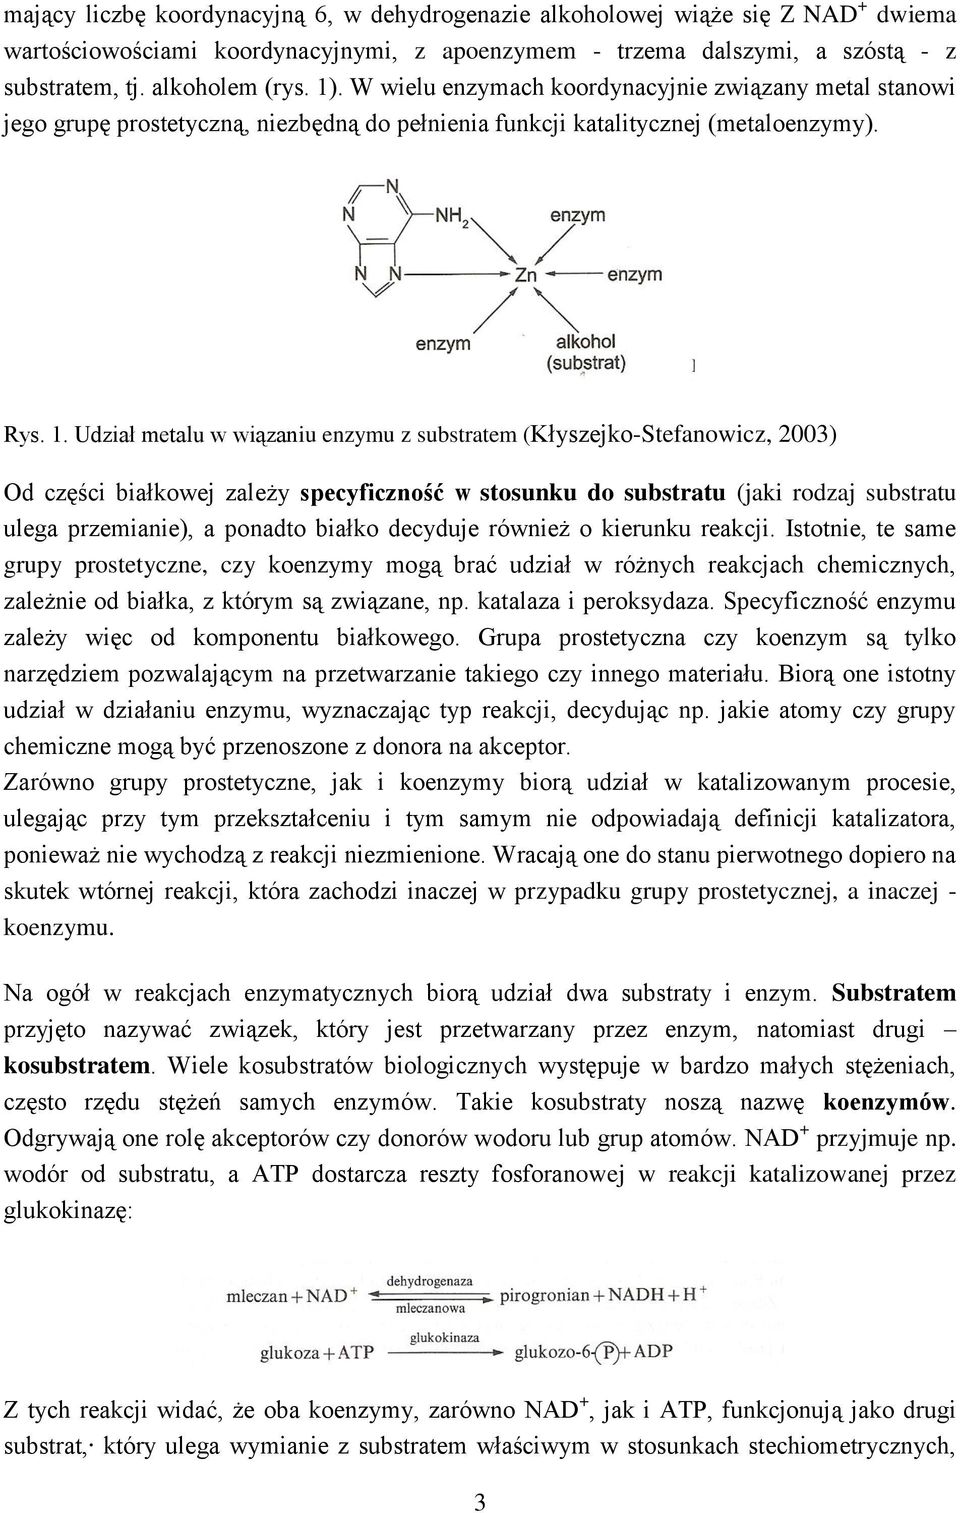 Udział metalu w wiązaniu enzymu z substratem (Kłyszejko-Stefanowicz, 2003) Od części białkowej zależy specyficzność w stosunku do substratu (jaki rodzaj substratu ulega przemianie), a ponadto białko